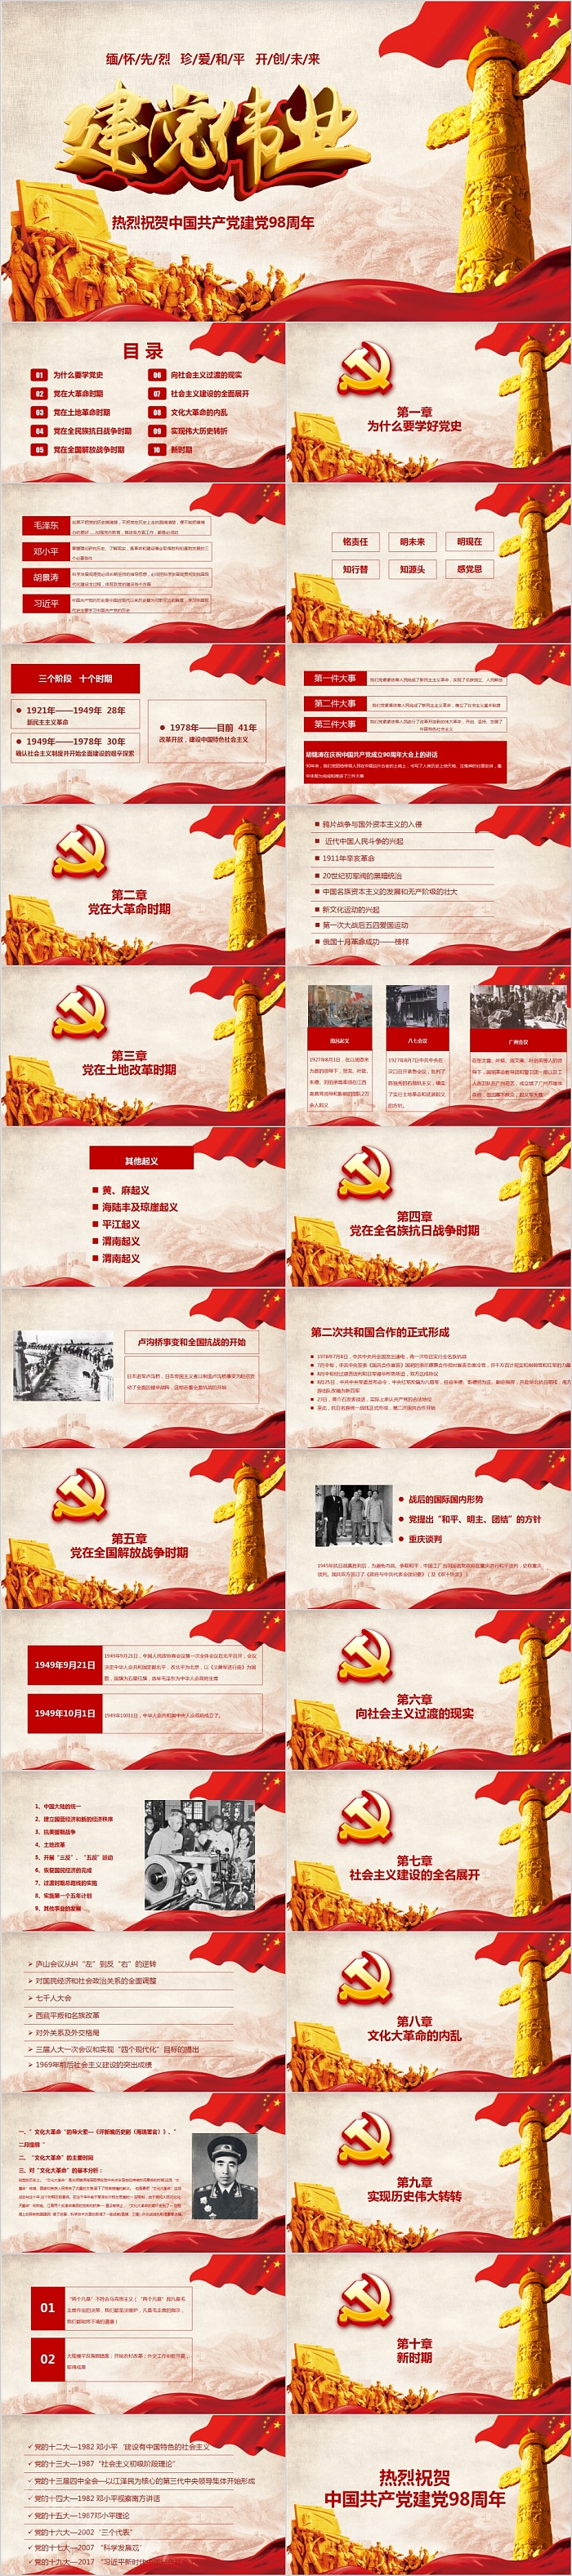 建党伟业热烈庆祝中国共产党建党98周年纪念PPT模板